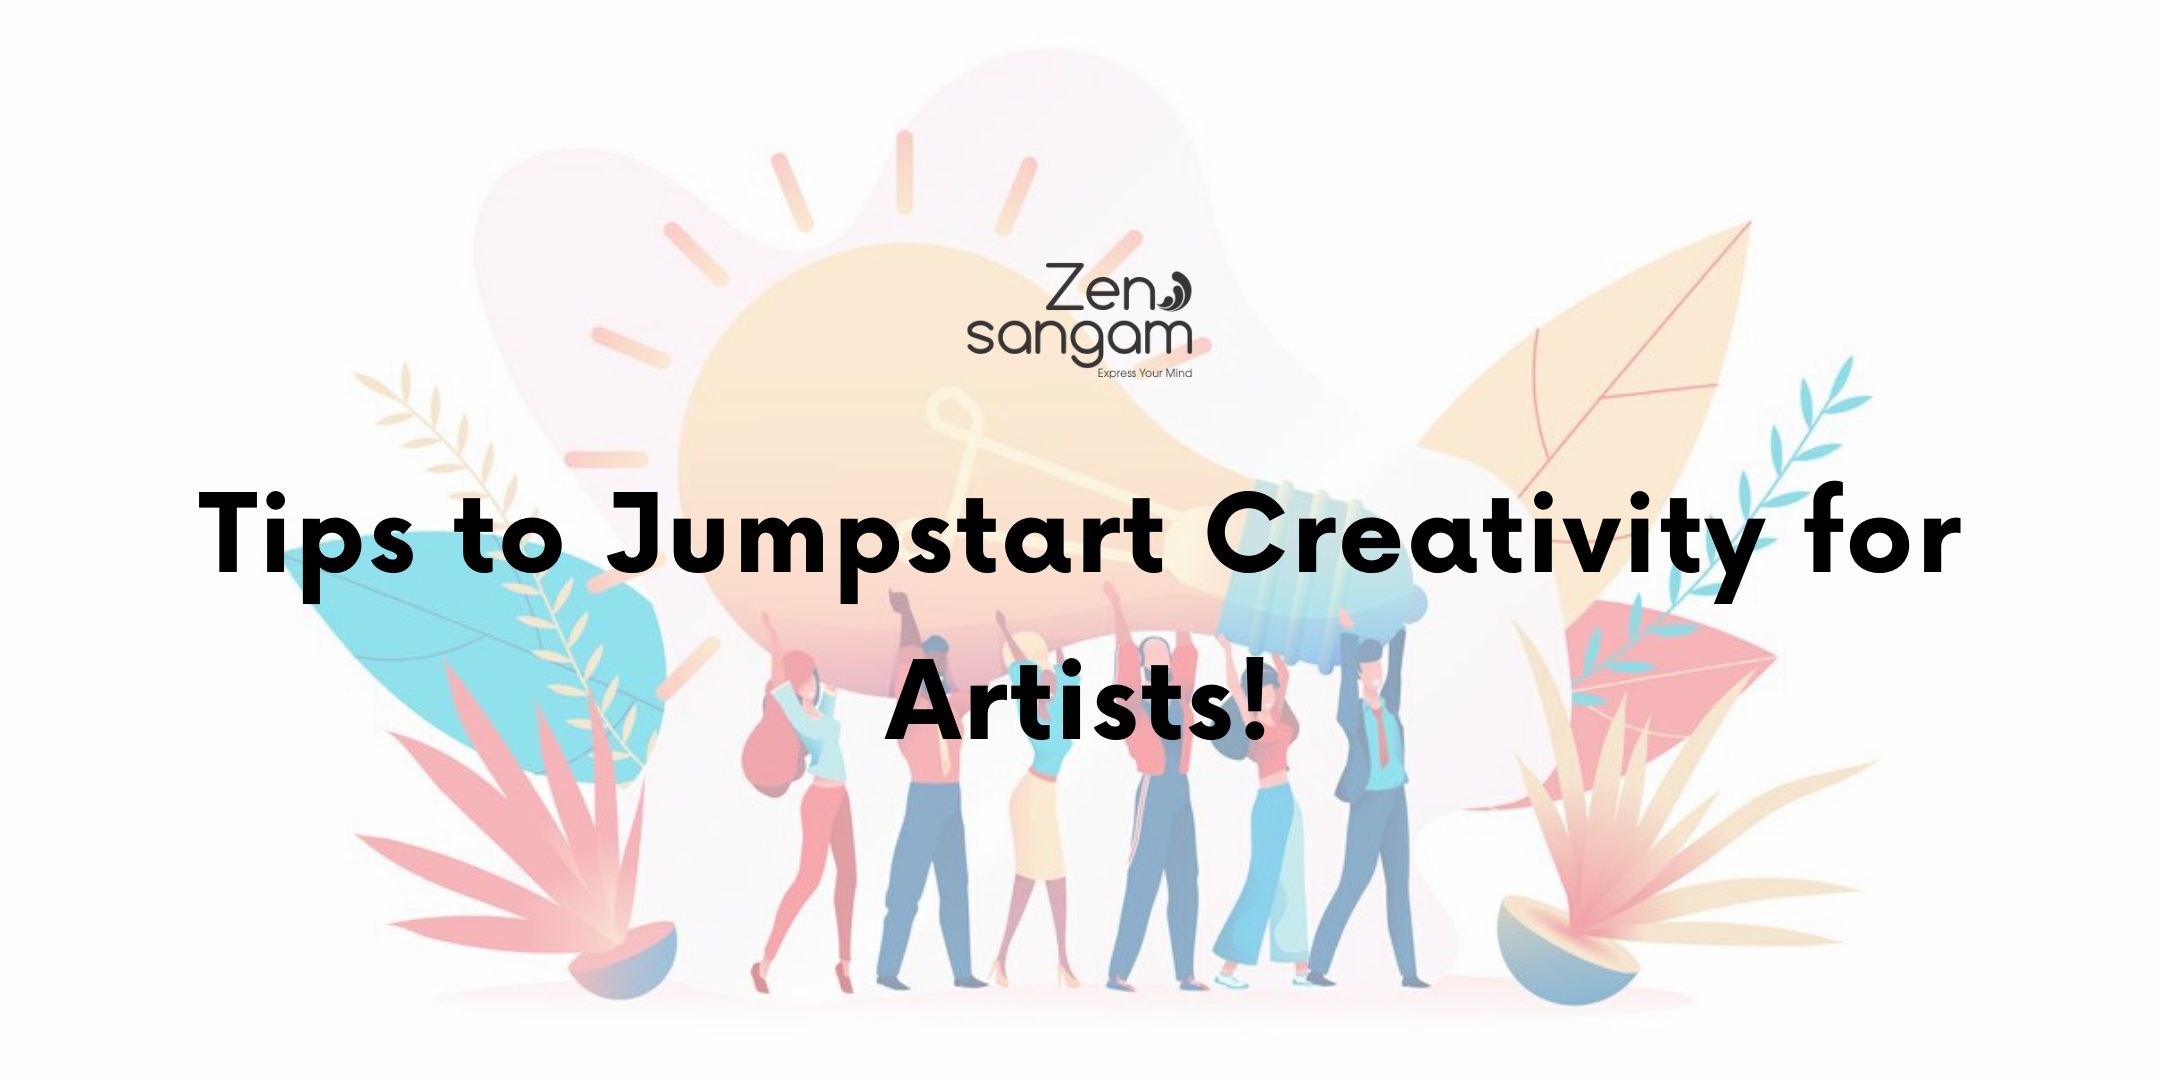 Tips to Jumpstart Creativity!